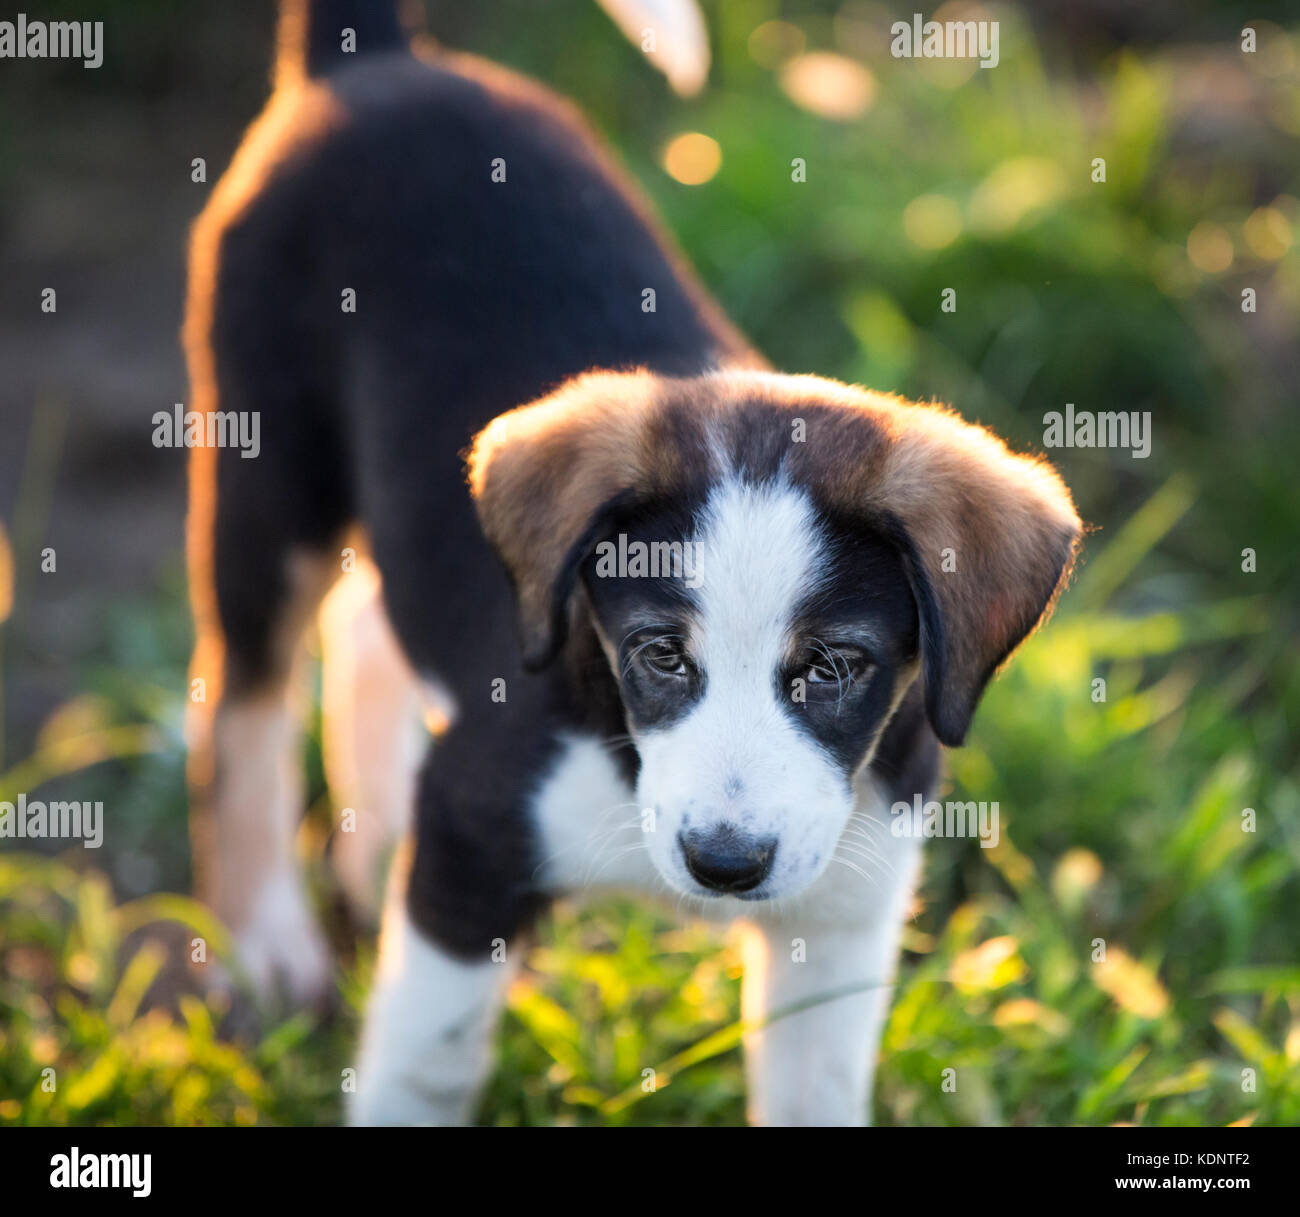 Cute pets dog petit chiot Banque D'Images